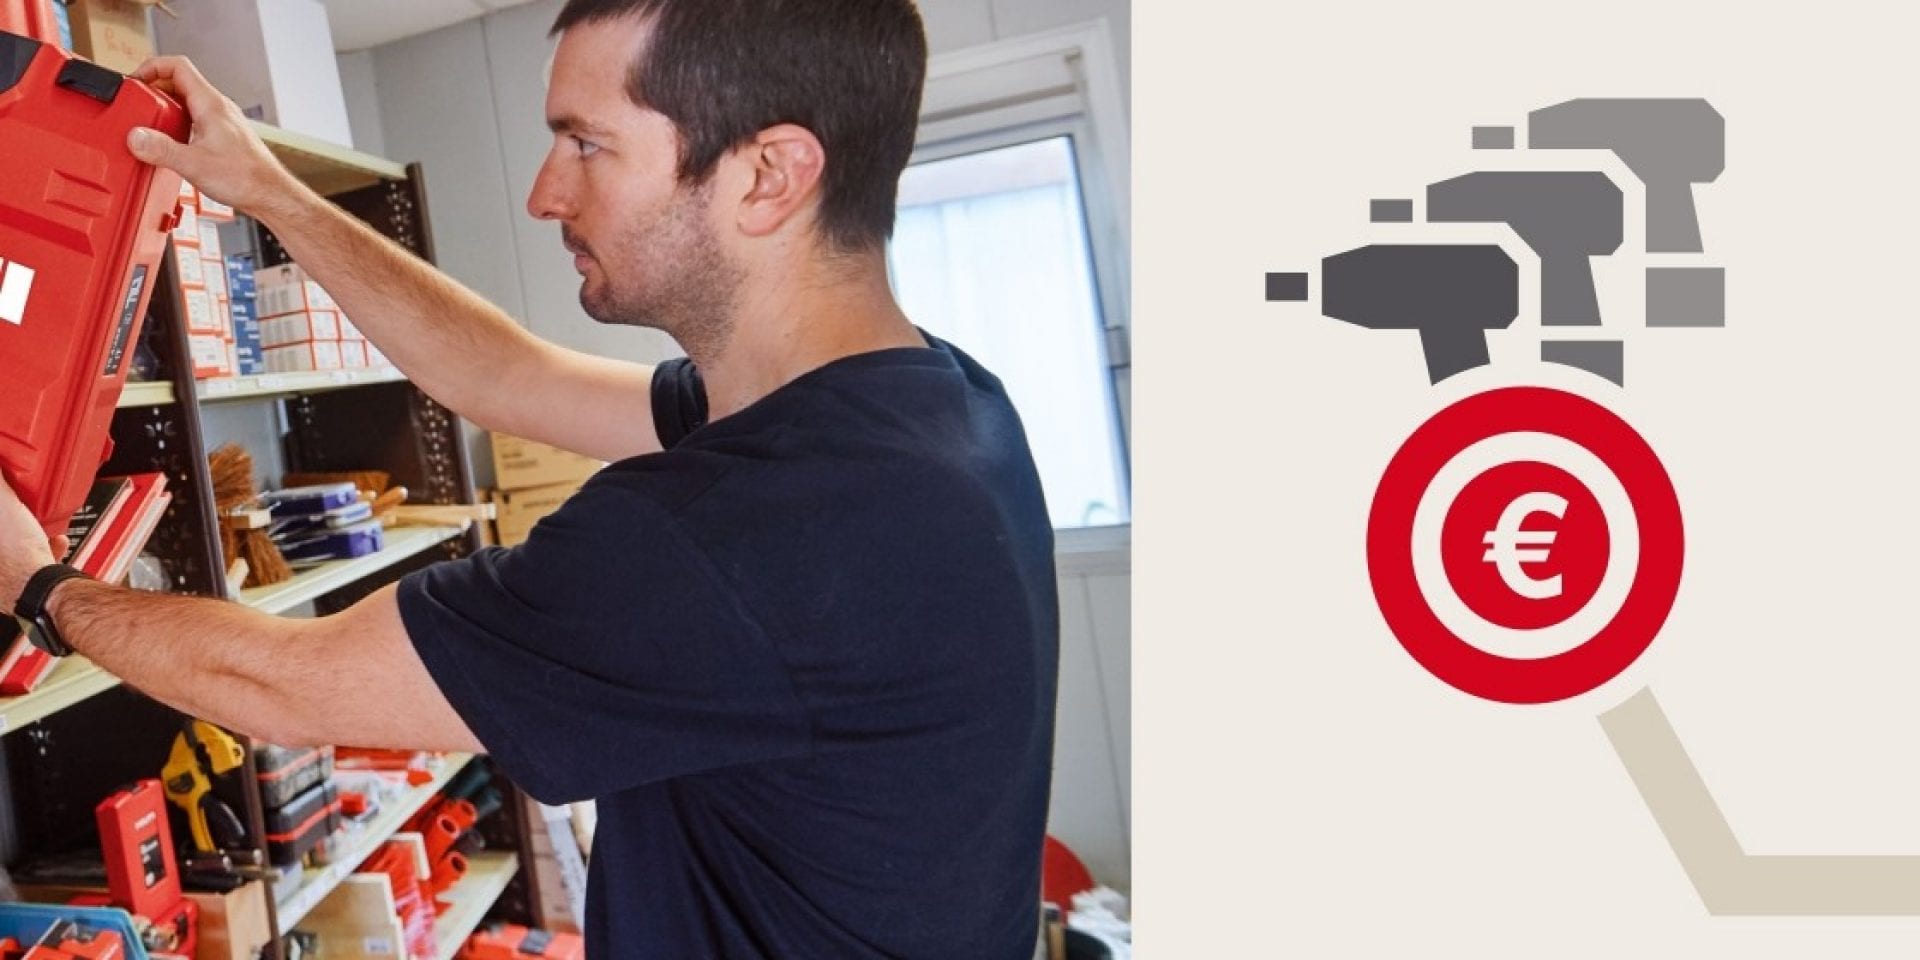 Ein männlicher Arbeiter nimmt einen roten Hilti Werkzeugkoffer aus einem Werkzeugregal. Rechts daneben ist eine Infografik mit drei grauen stilisierten Akkuschraubern und einem roten Eurozeichen zu sehen.